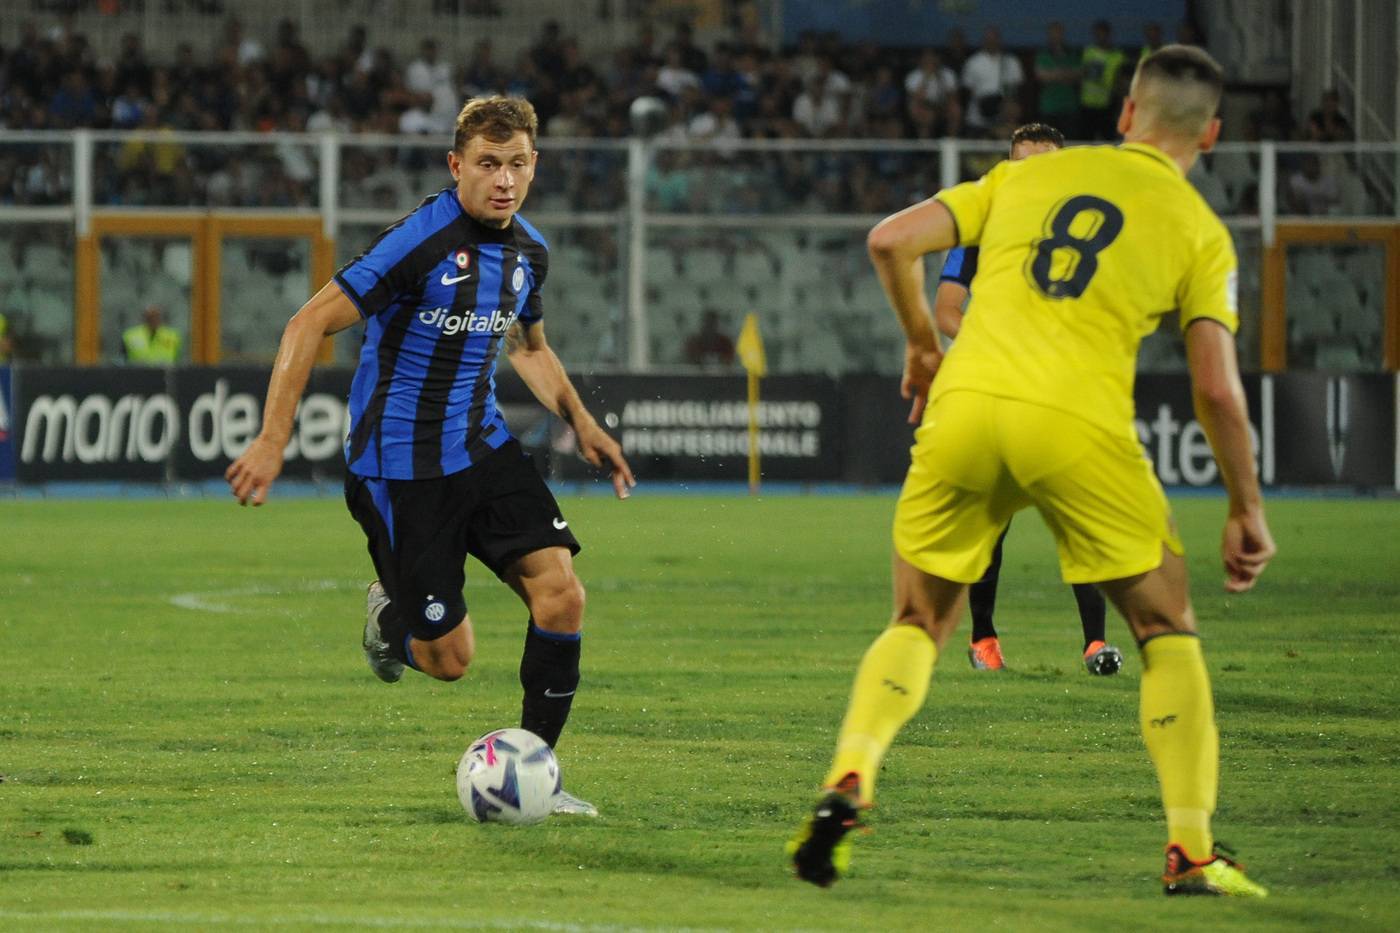 Svolta in arrivo, l'Inter dice addio a DigitalBits: tutti gli scenari